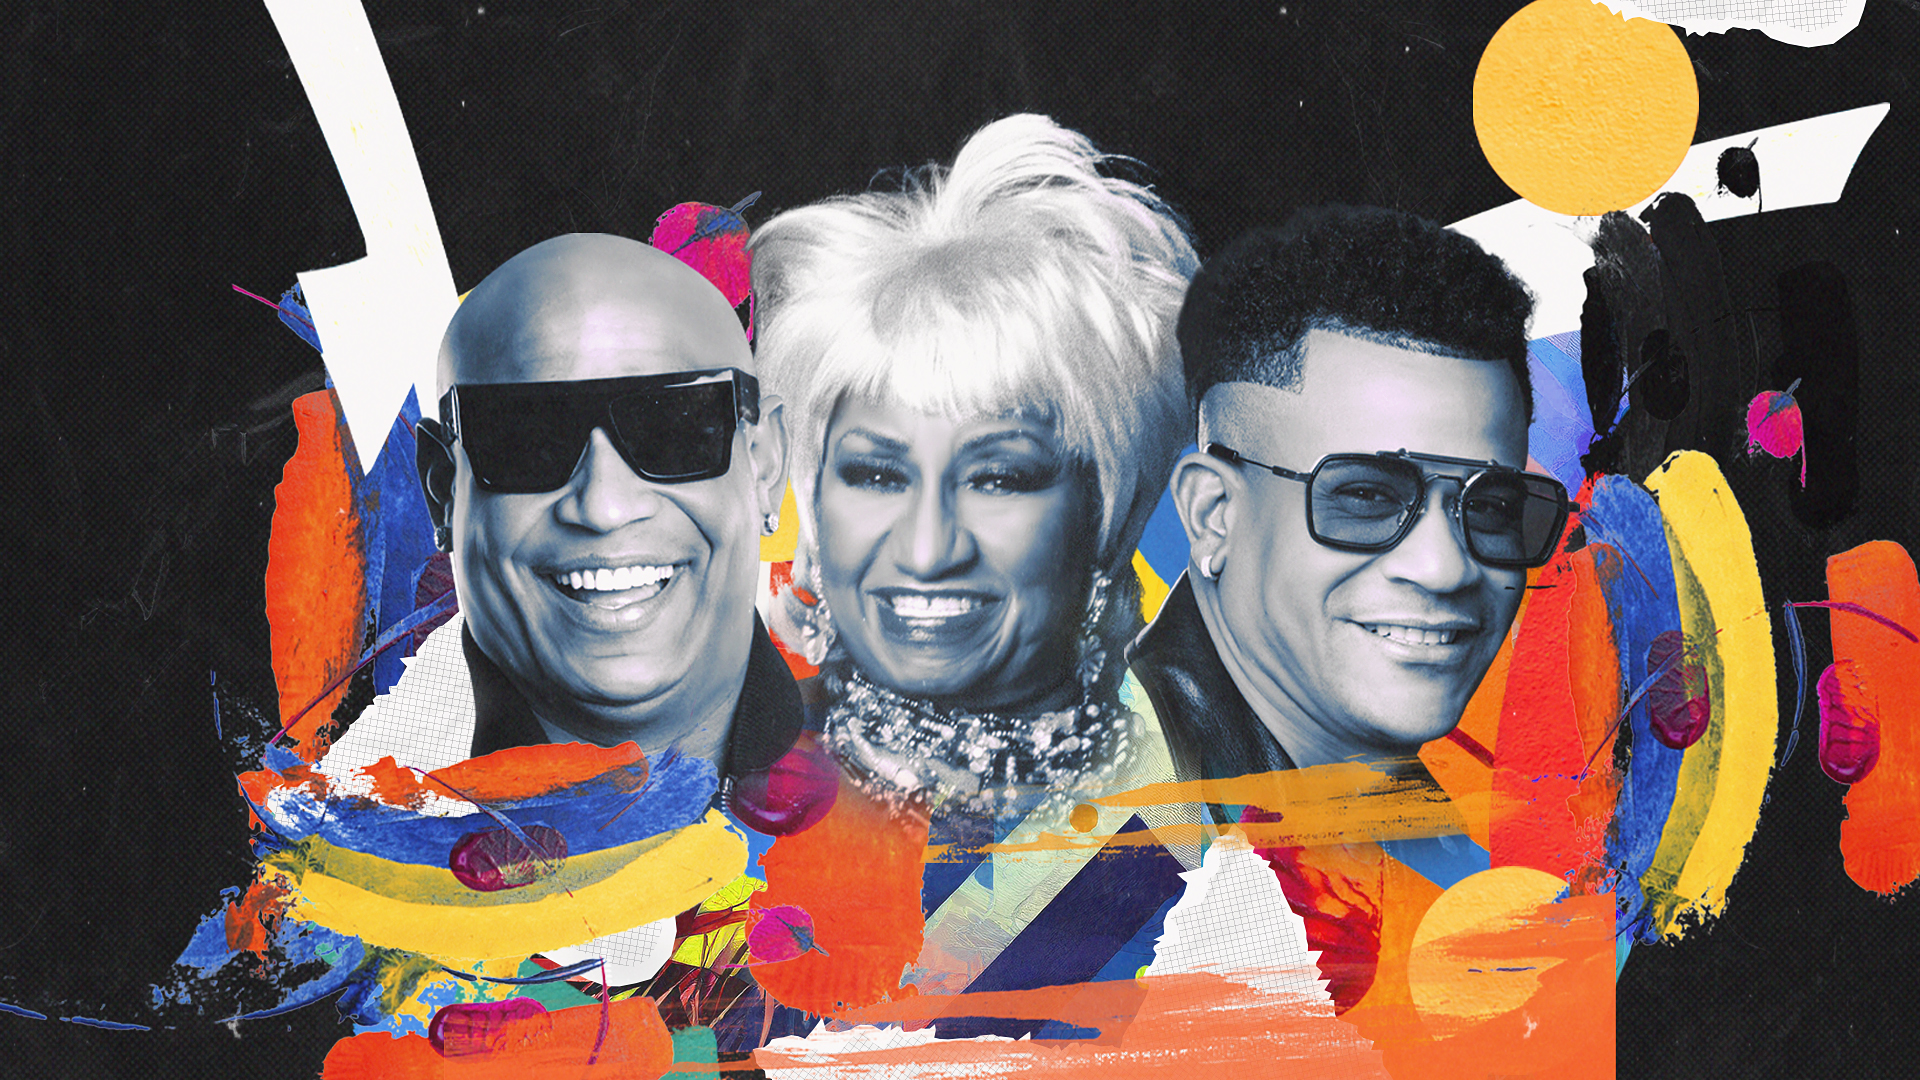 La colaboración de Gente de Zona con Celia Cruz incorpora las voces originales de la “Reina de la Salsa” en sus temas: “Ella Tiene Fuego” y “La Negra Tiene Tumbao”.